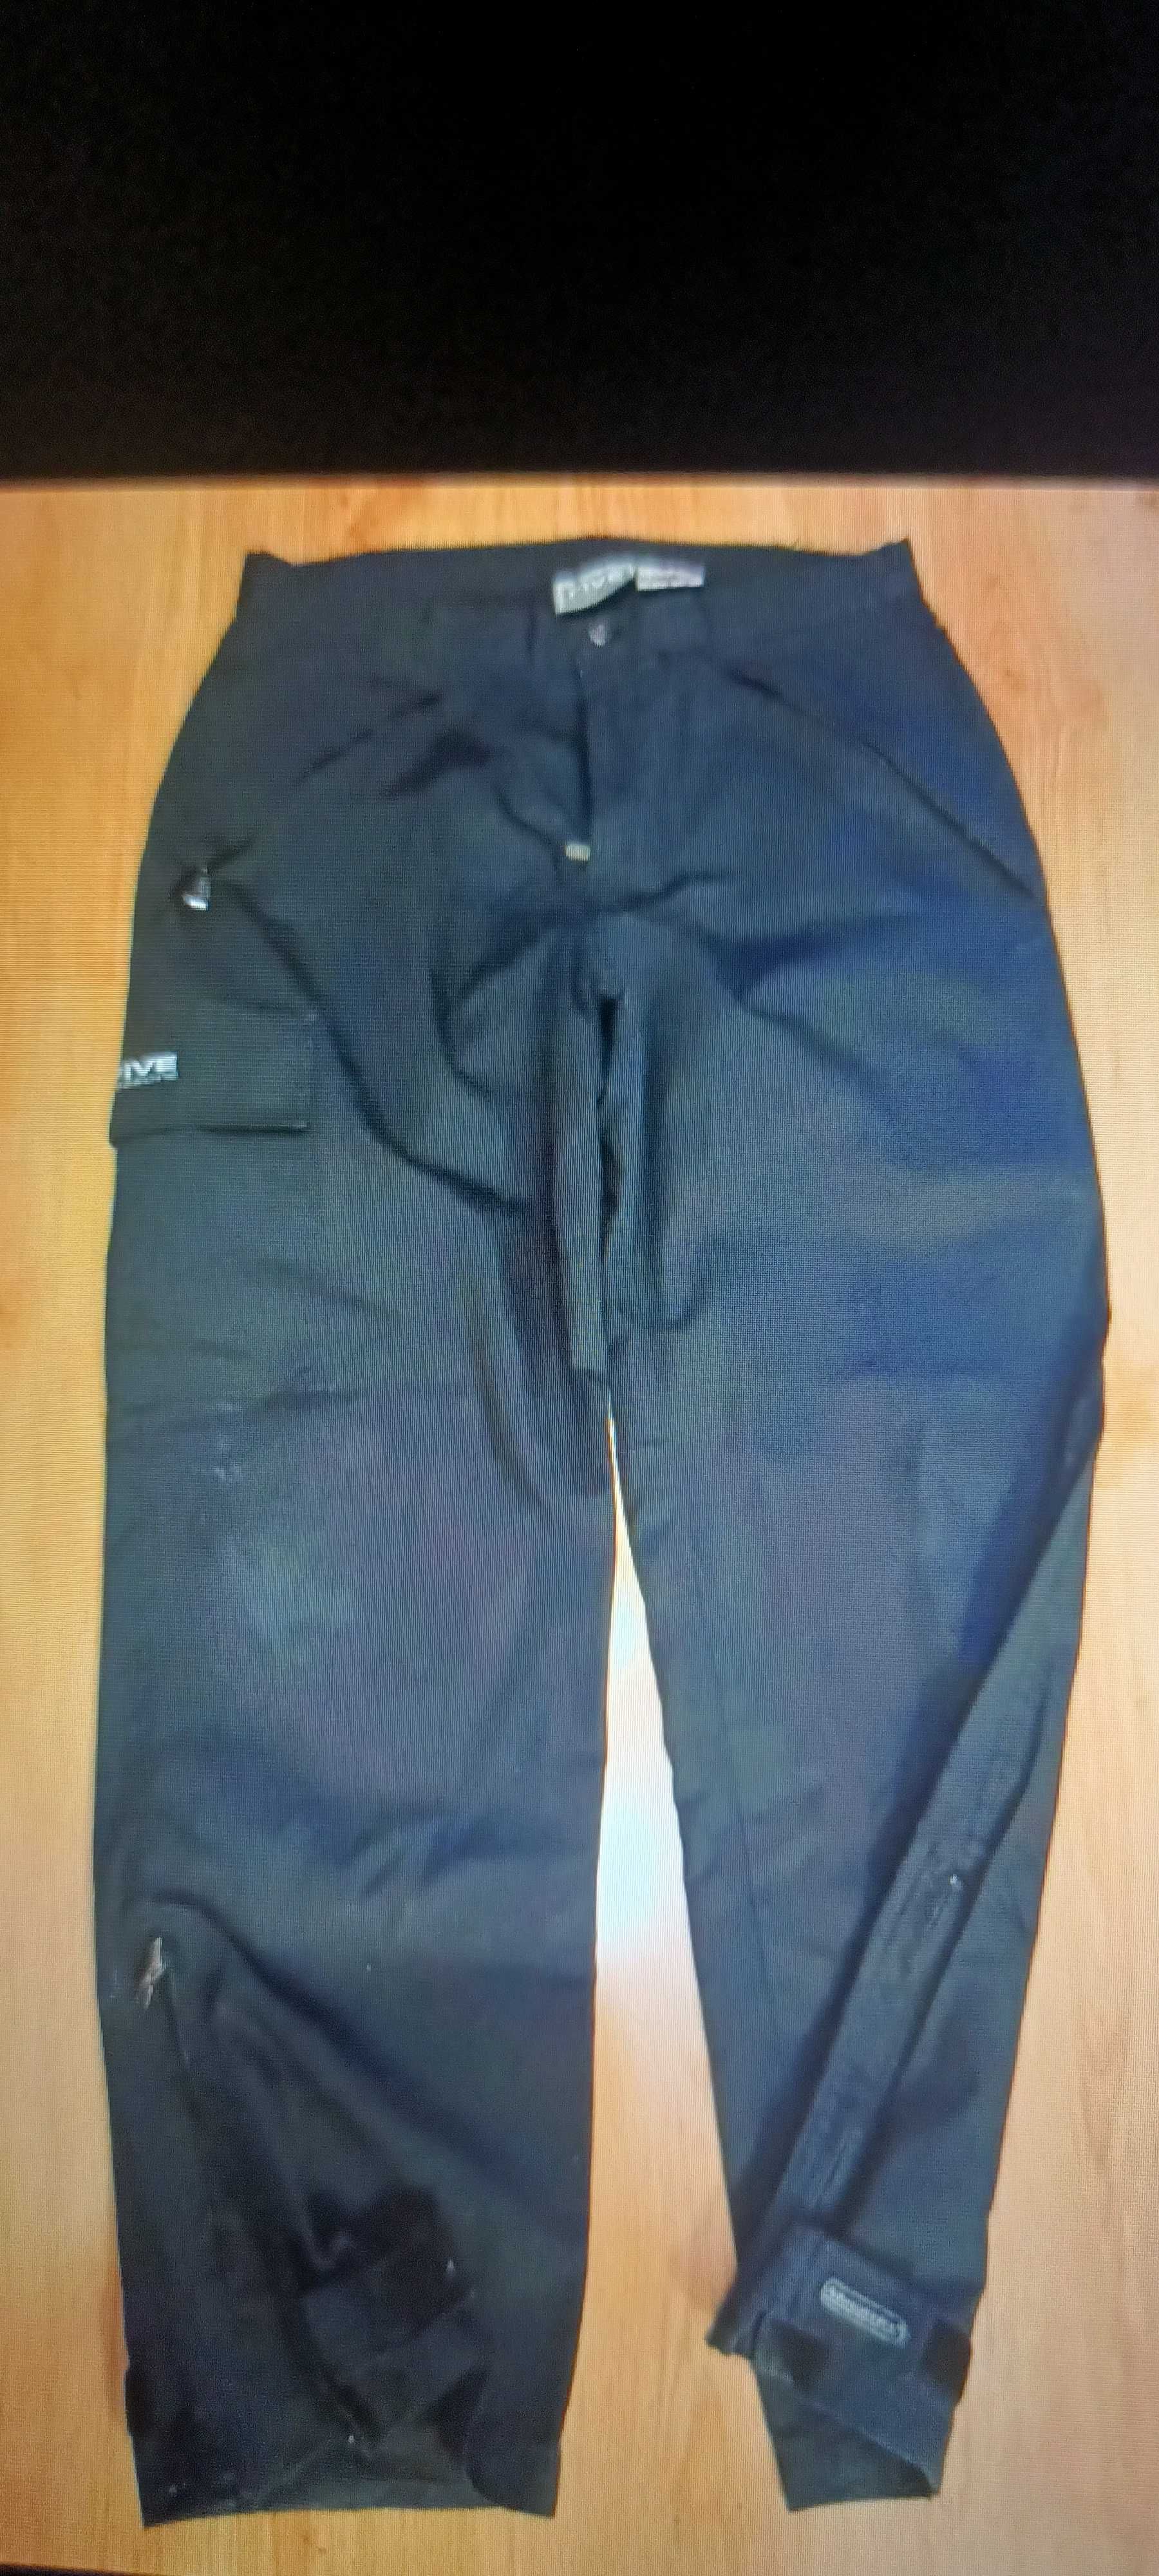 Spodnie męskie grubsze z podszewką  firmy Five rozmiar M